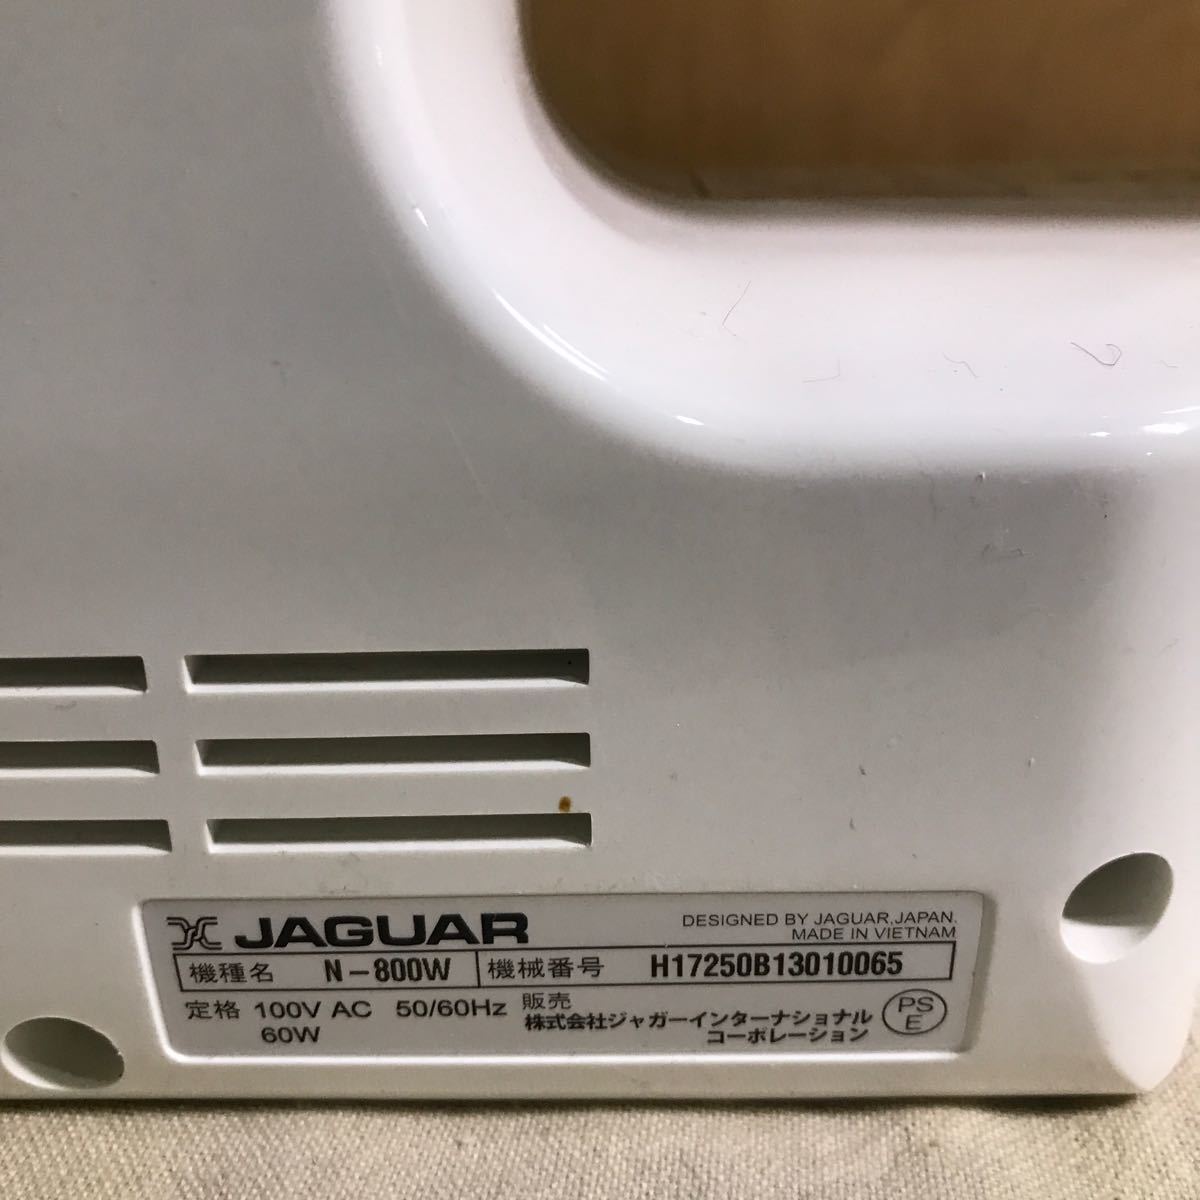 JAGUAR ...  компактный   швейная машина  N-800W  красивая вещь 